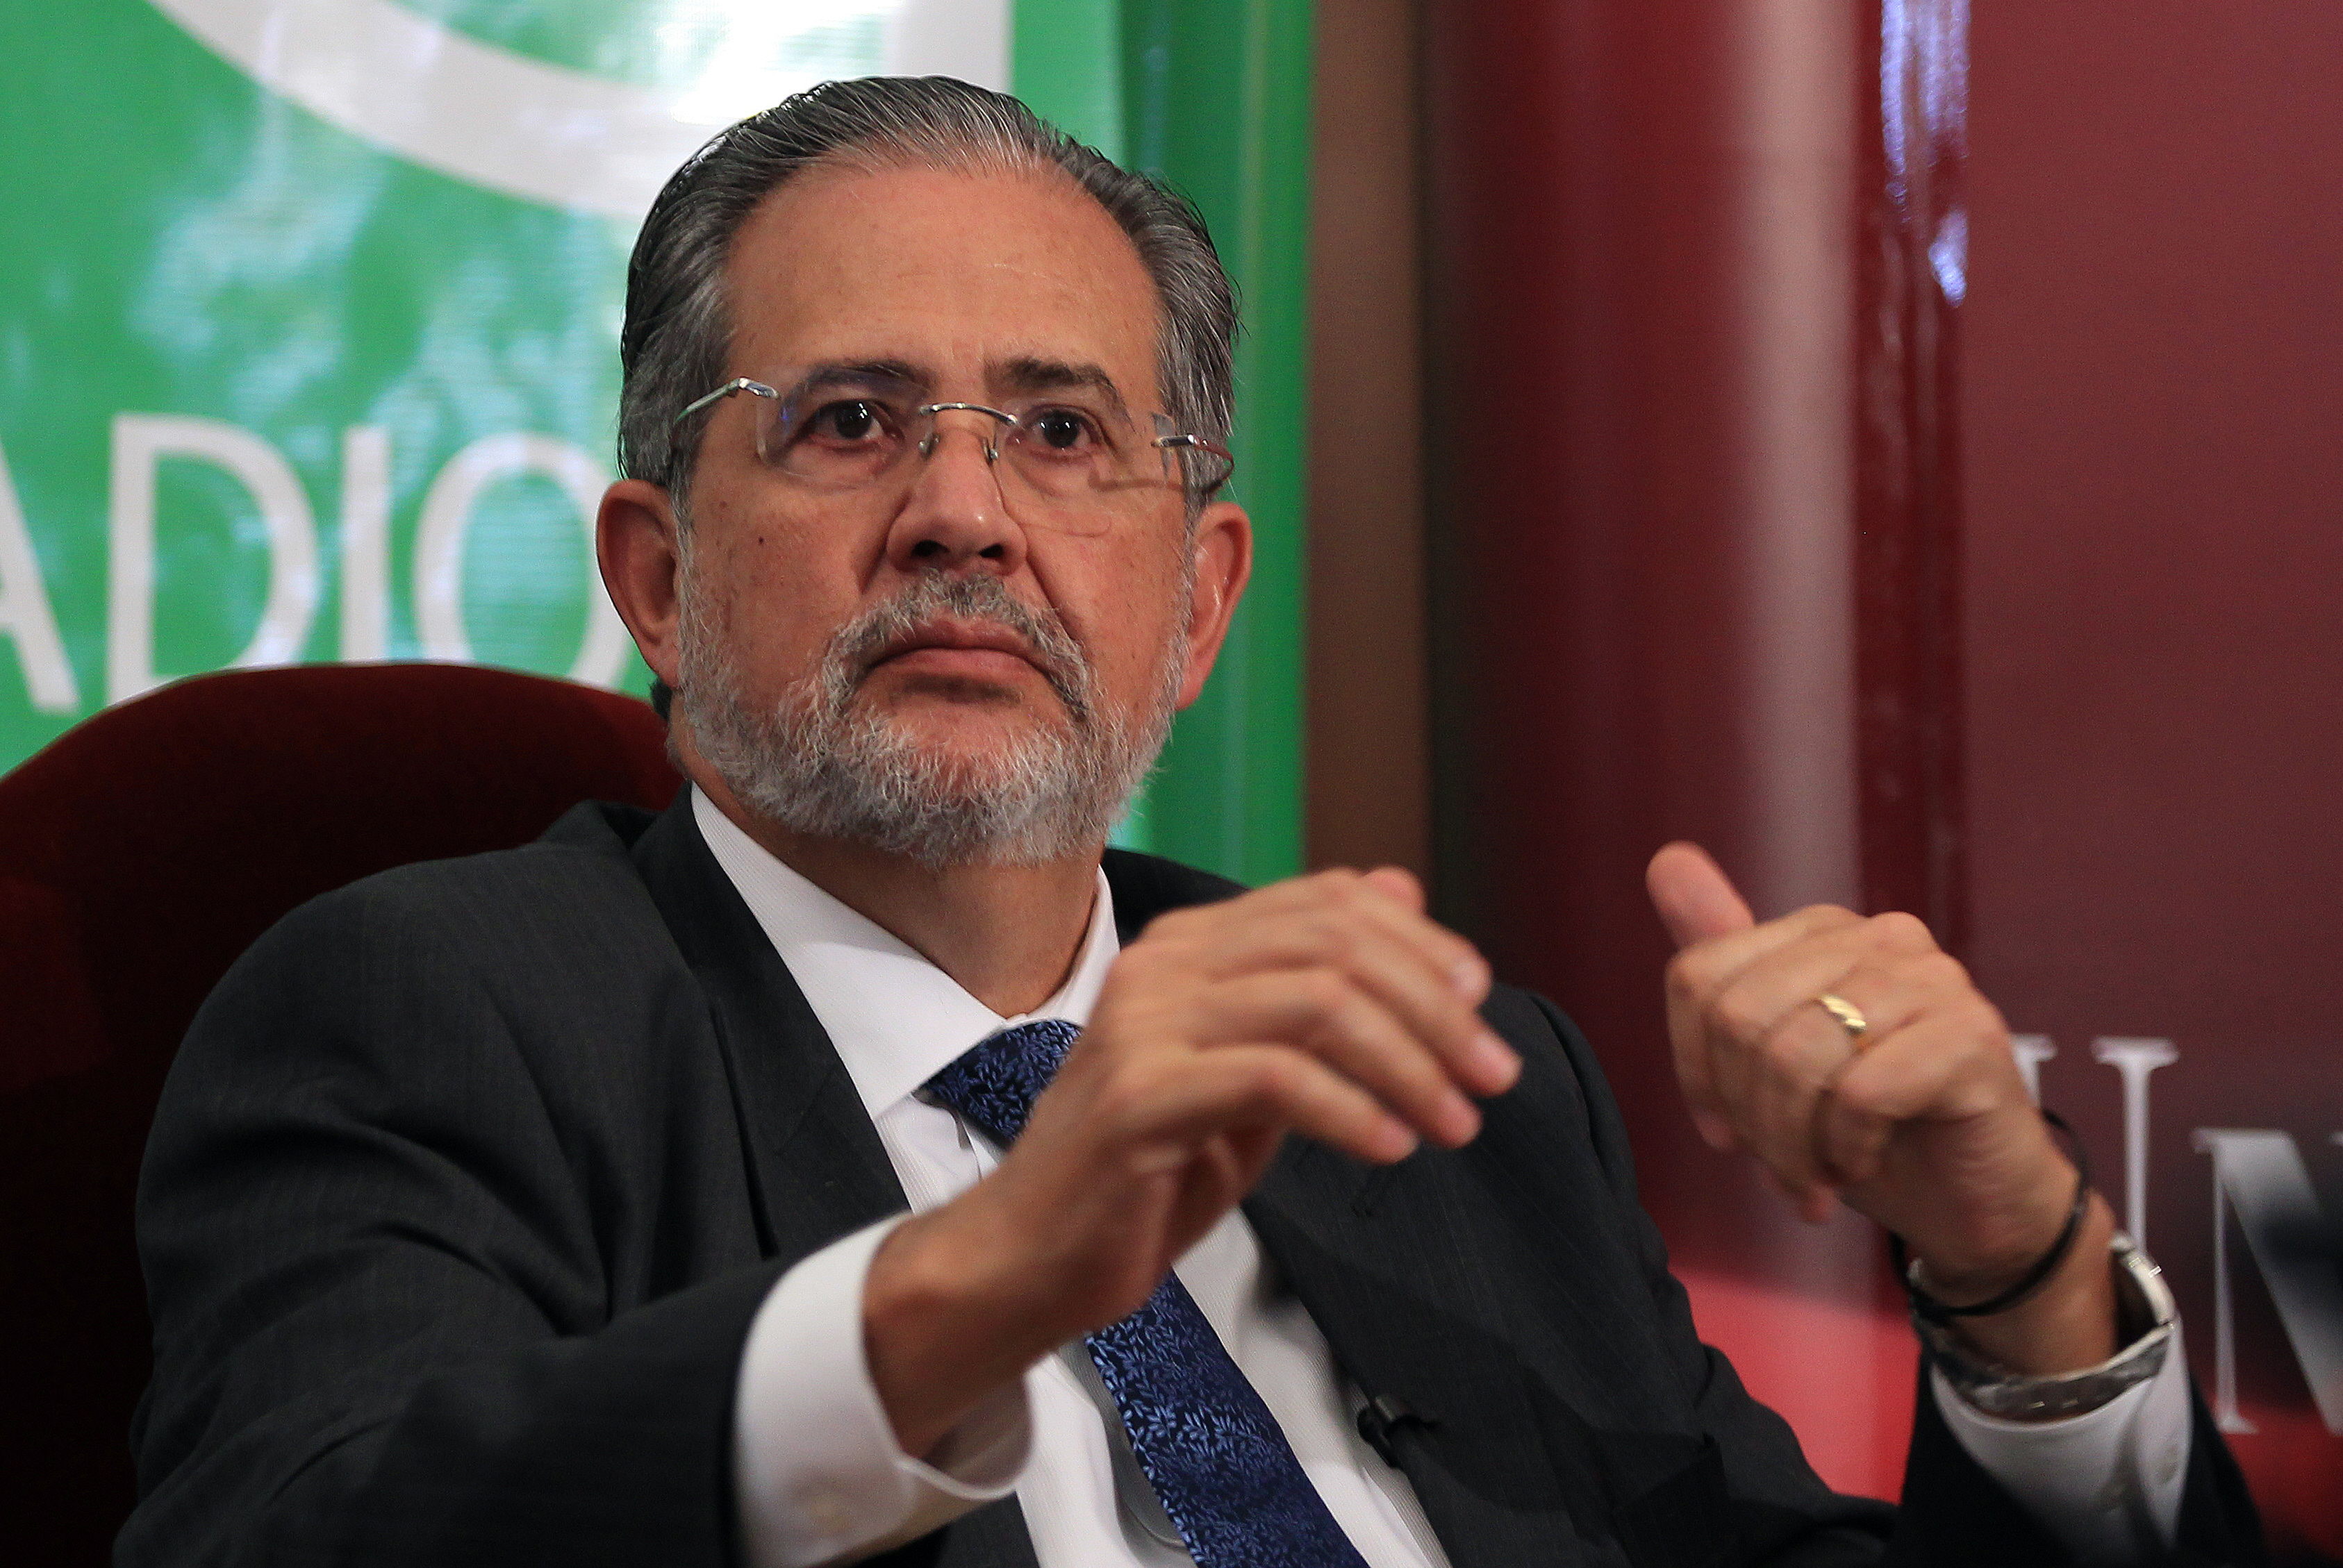 Fallo millonario contra El Nacional, diario crítico del chavismo es una “expropiación”, dice Miguel Henrique Otero